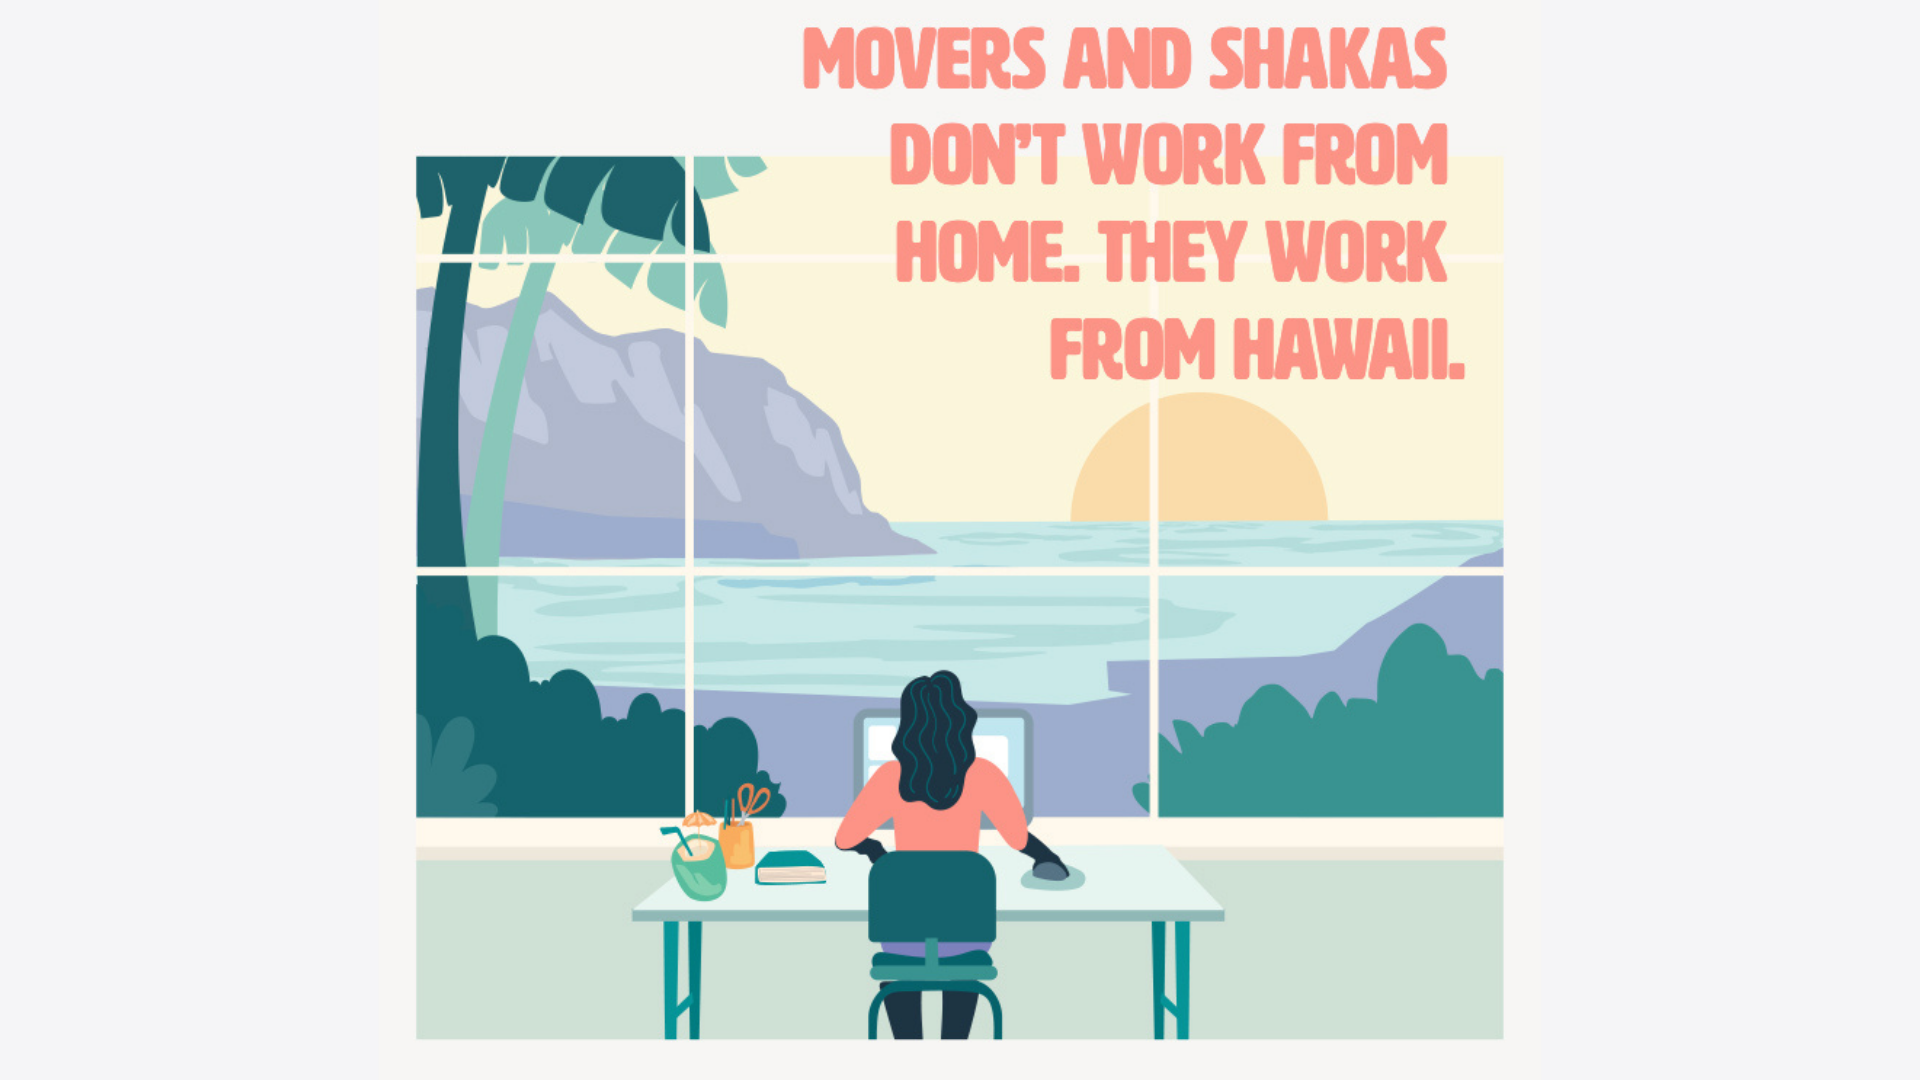 L'iniziativa mira ad aiutare le Hawaii nella sua ripresa economica.